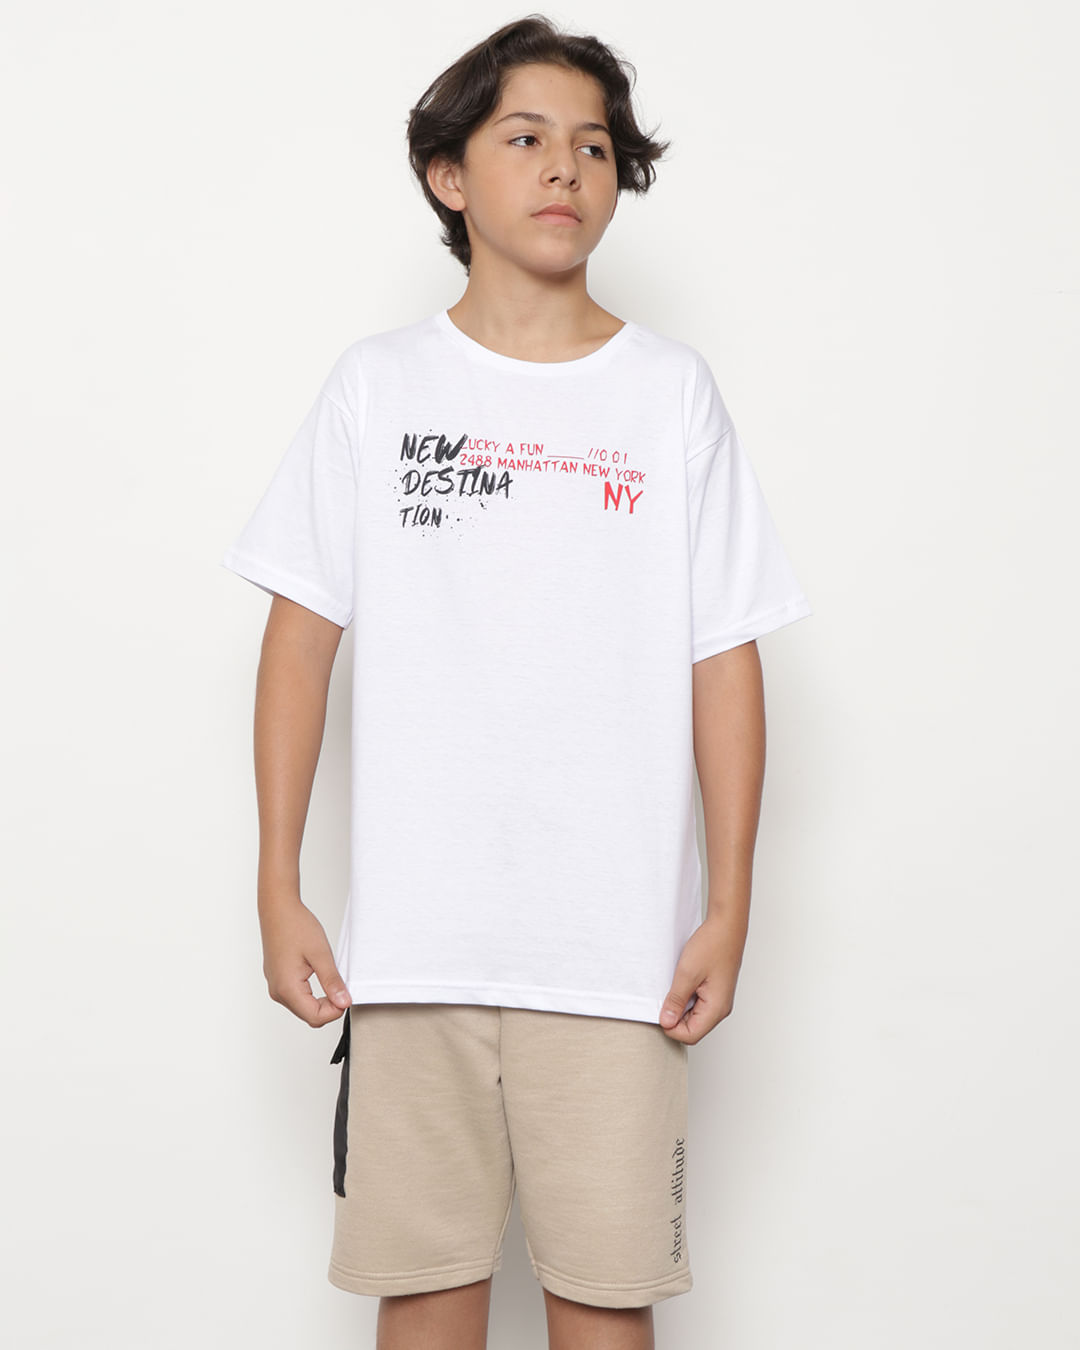 Camiseta-T38505-Mc-M-1016-Urbano---Branco